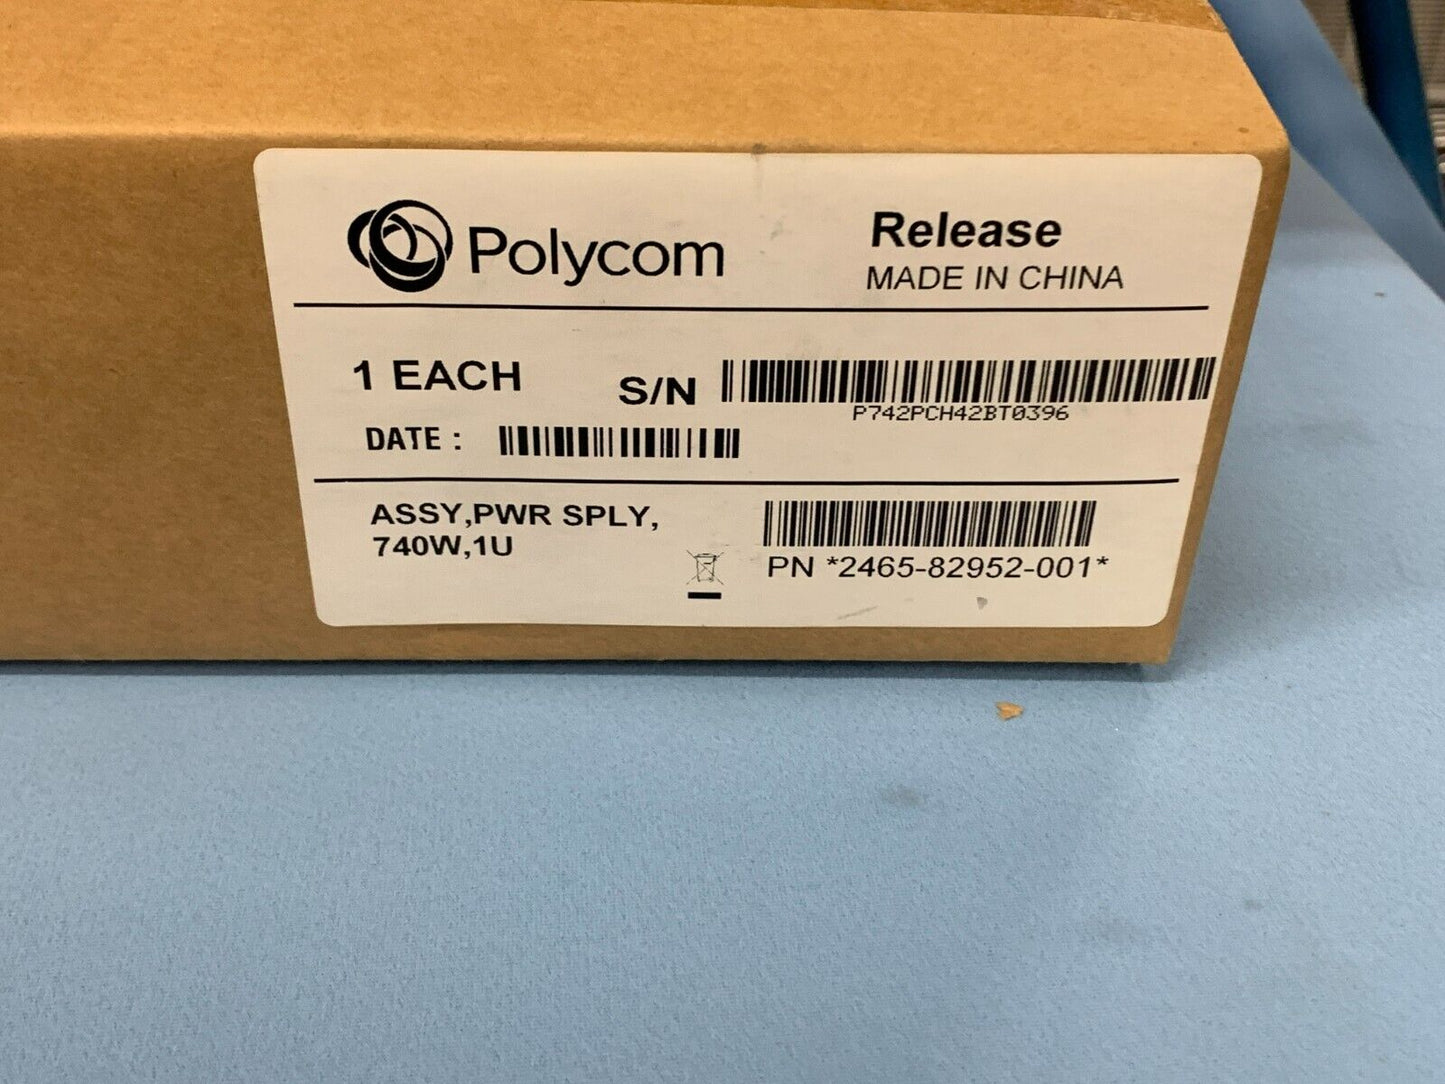 Polycom 2465-82952-001 / 740W / 1U / Power Supply